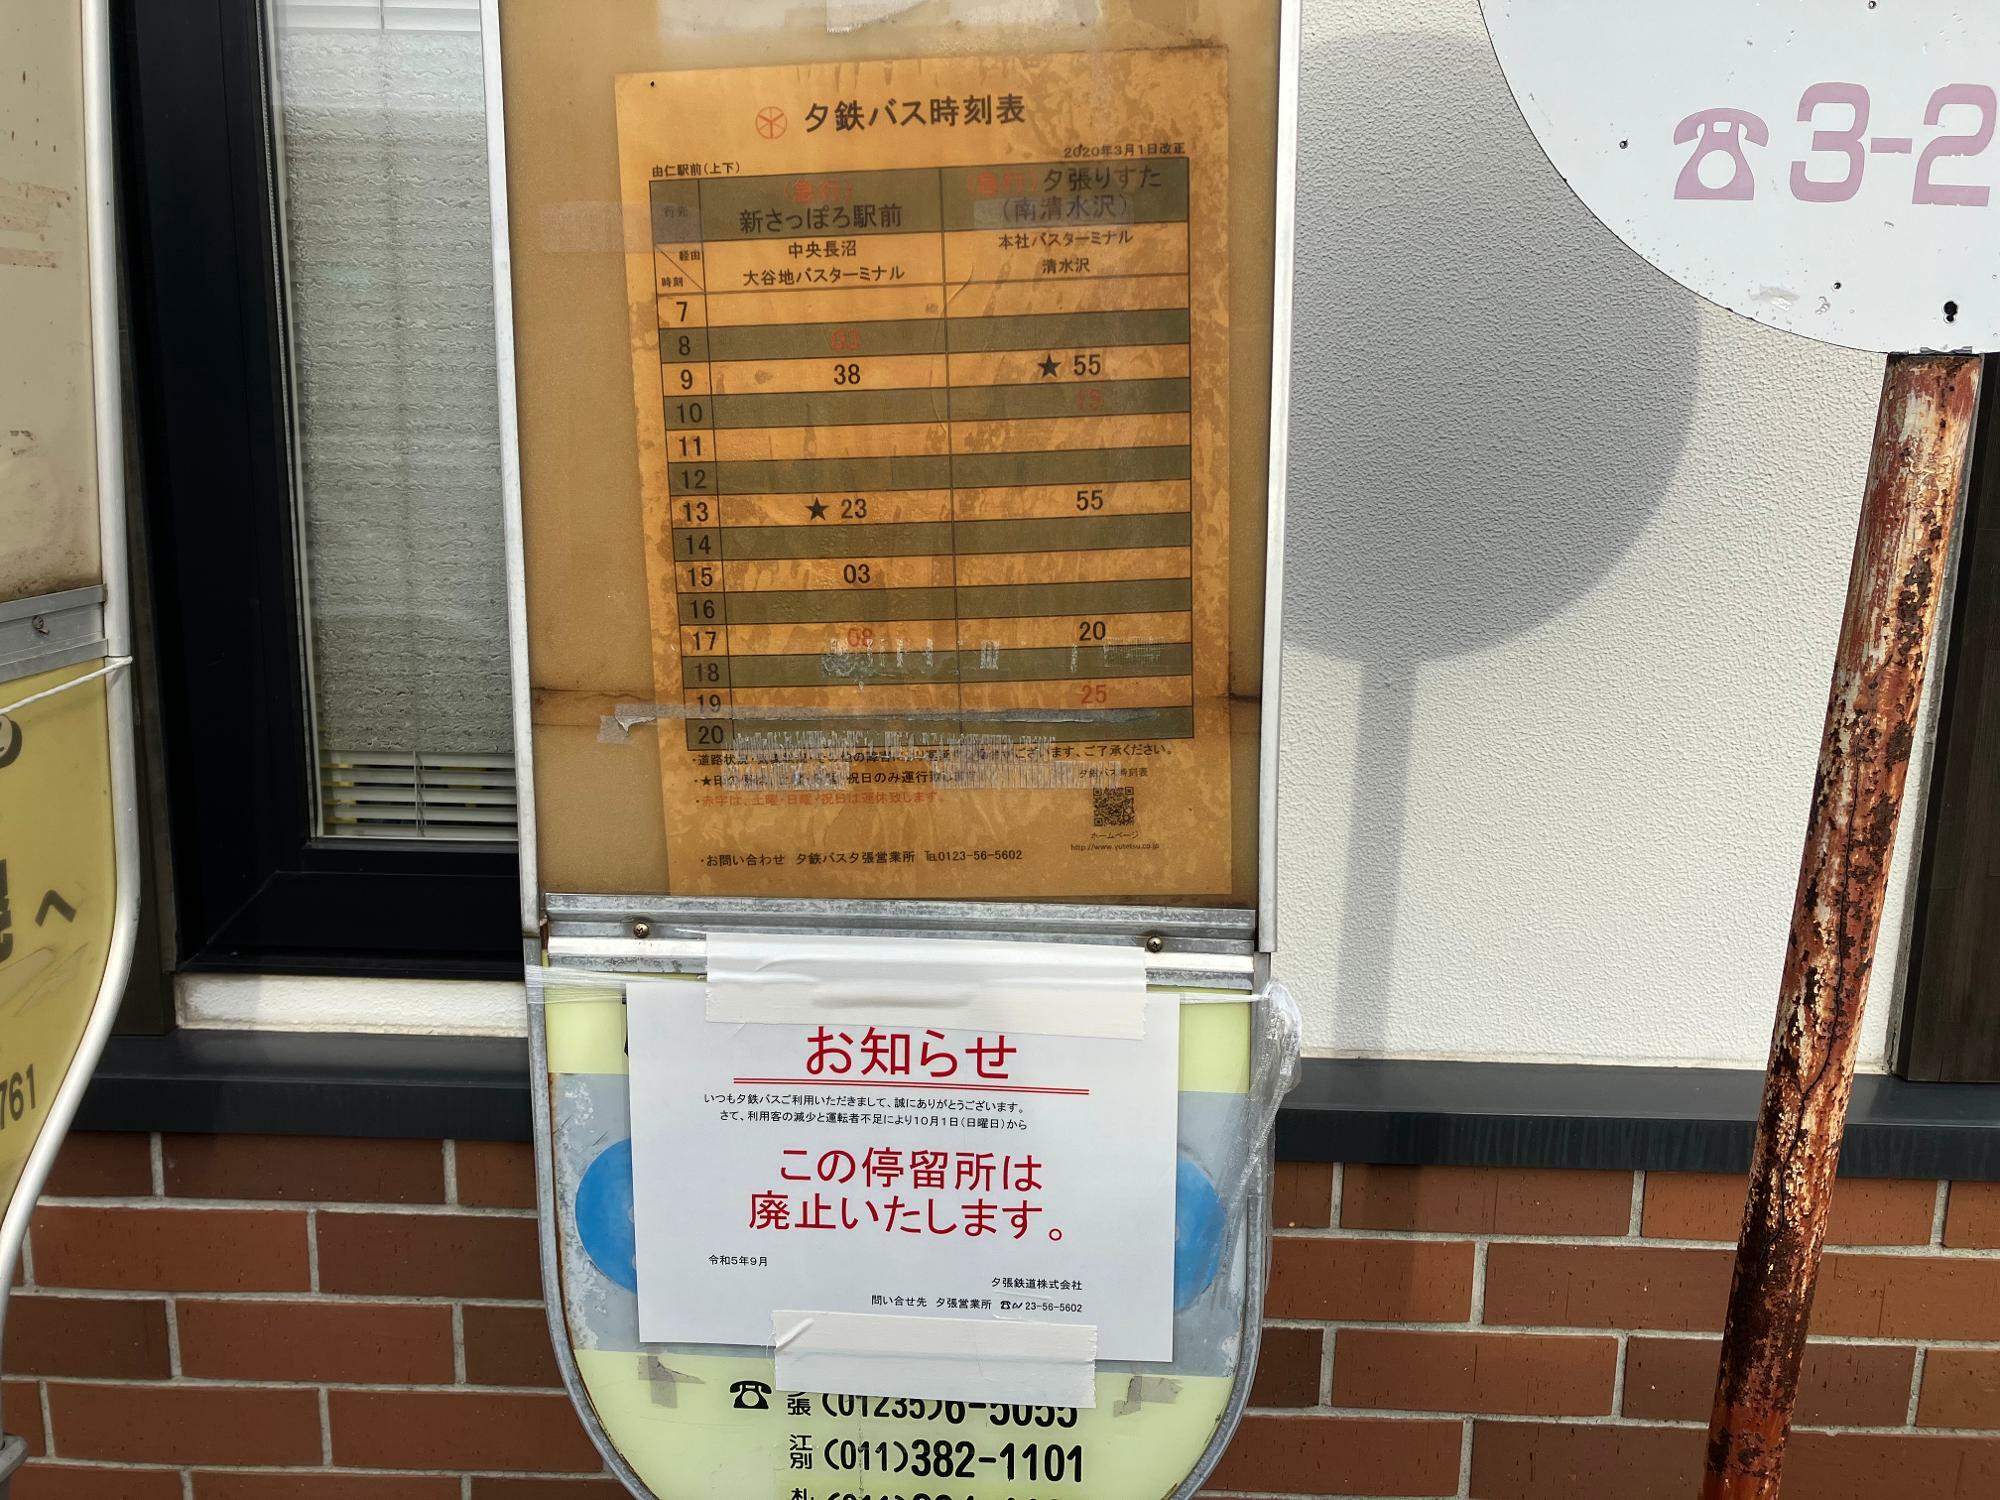 由仁駅のバス停には廃止を告げる旨の掲示がされていた（筆者撮影）